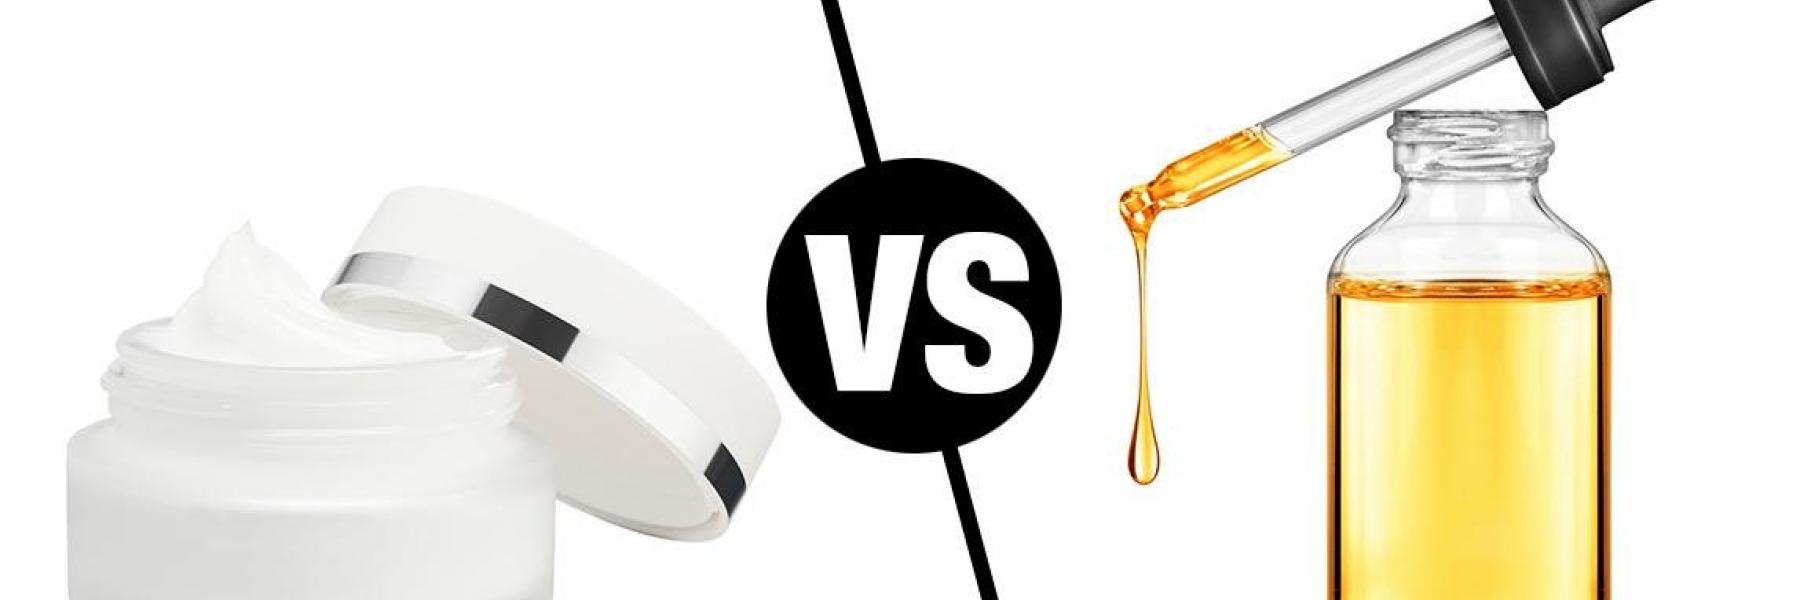 السيروم أم المرطب.. أيهما الأكثر فعالية للعناية بالبشرة؟